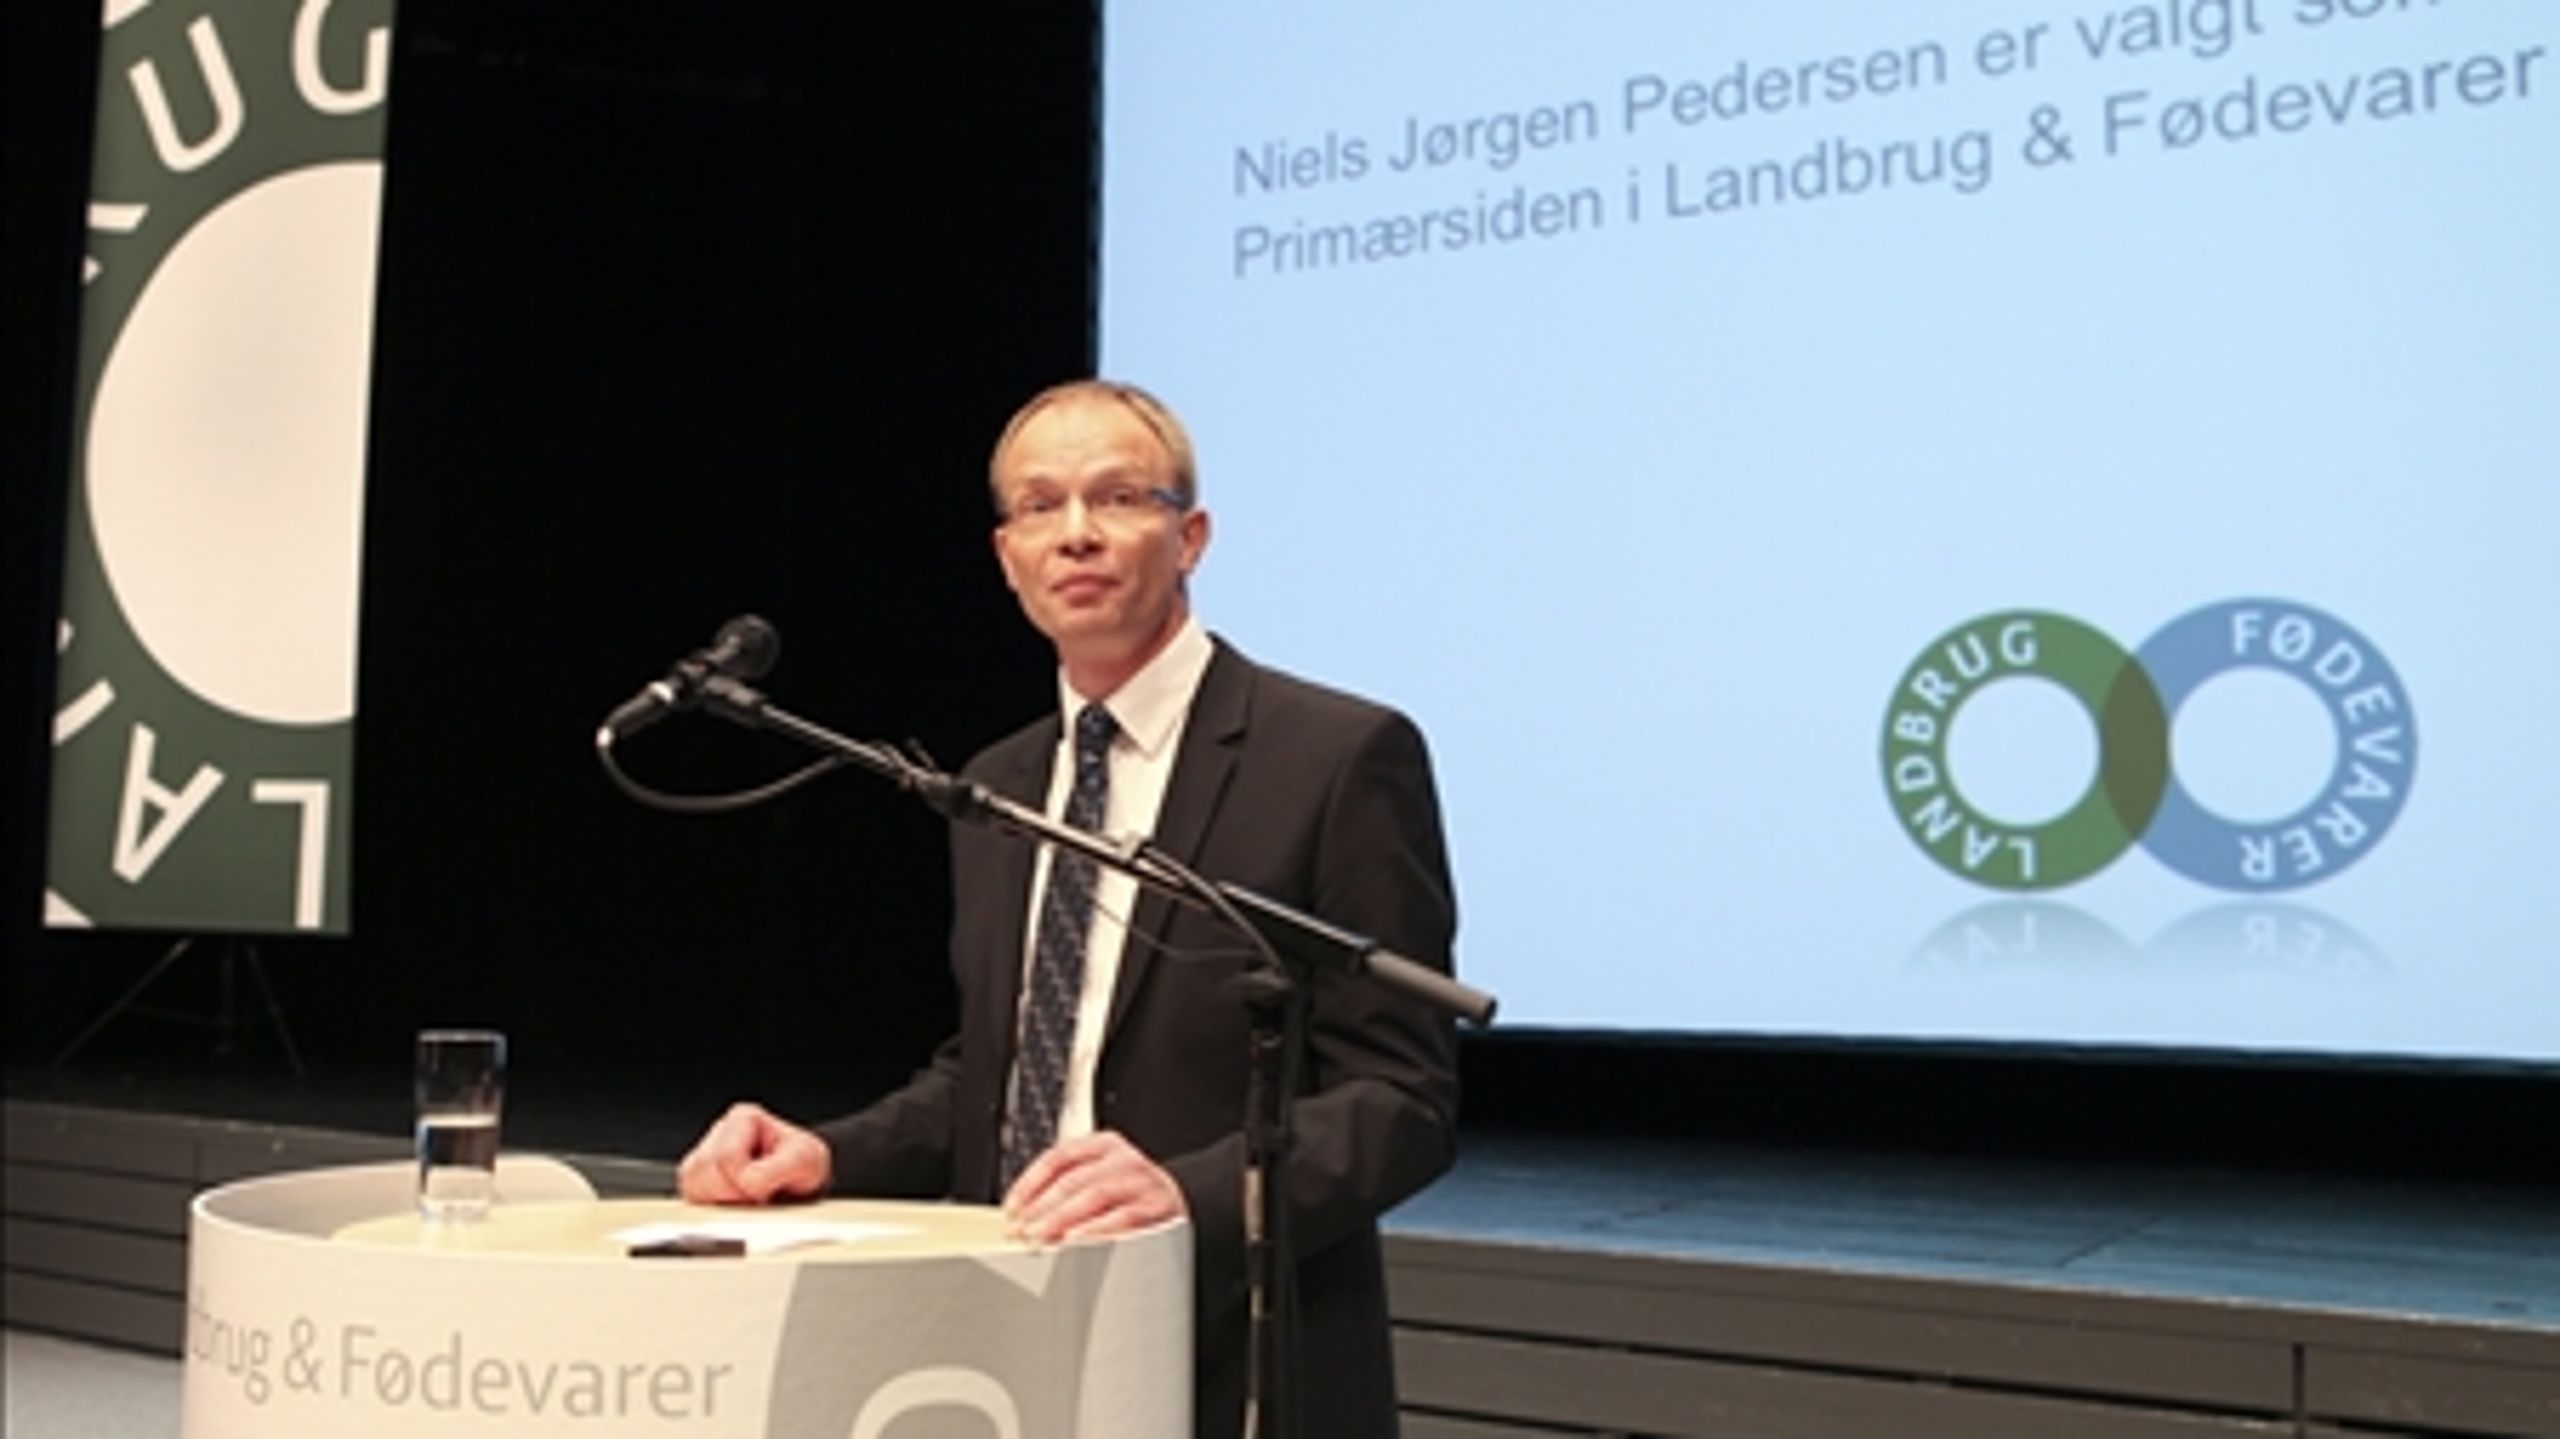 Der er store forventninger til den nye nye formand for Landbrug & Fødevarer, Niels Jørgen Pedersen.